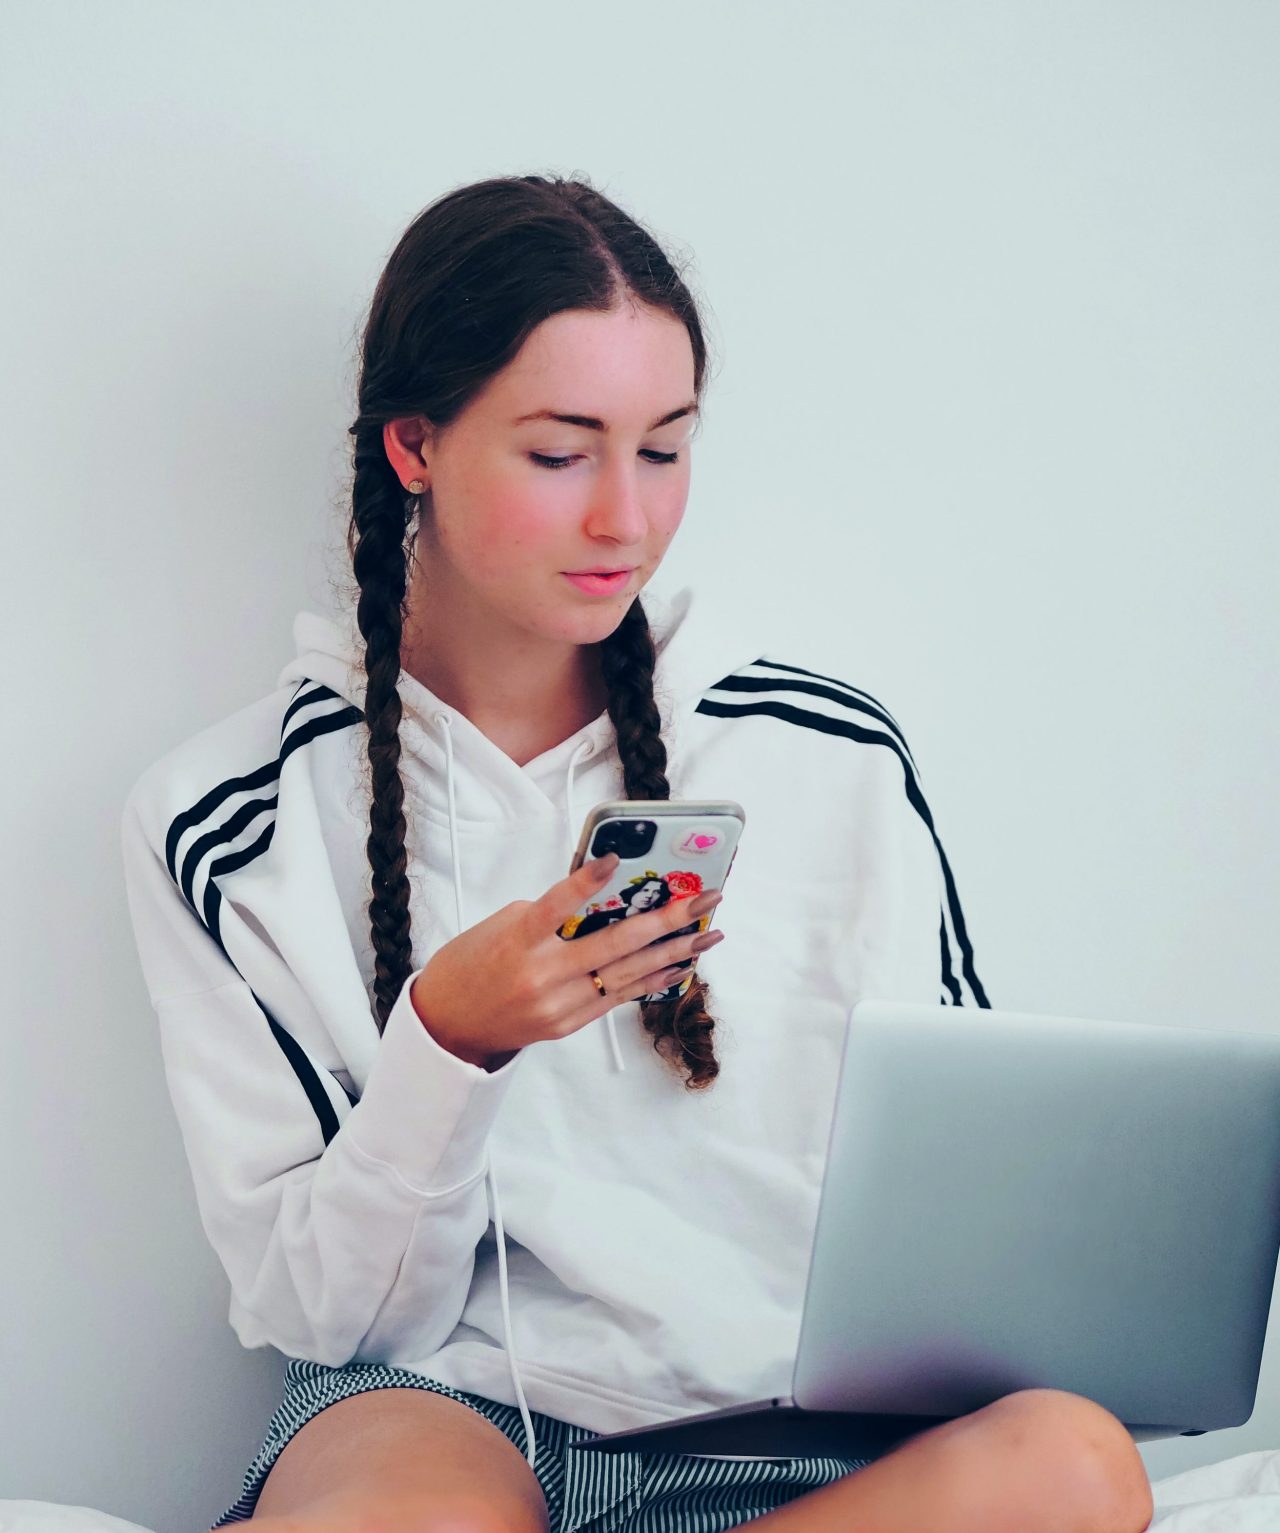 Eine Jugendliche sitzt auf dem Bett und schaut aufs Handy, während sie einen Laptop auf dem Schoß hat.